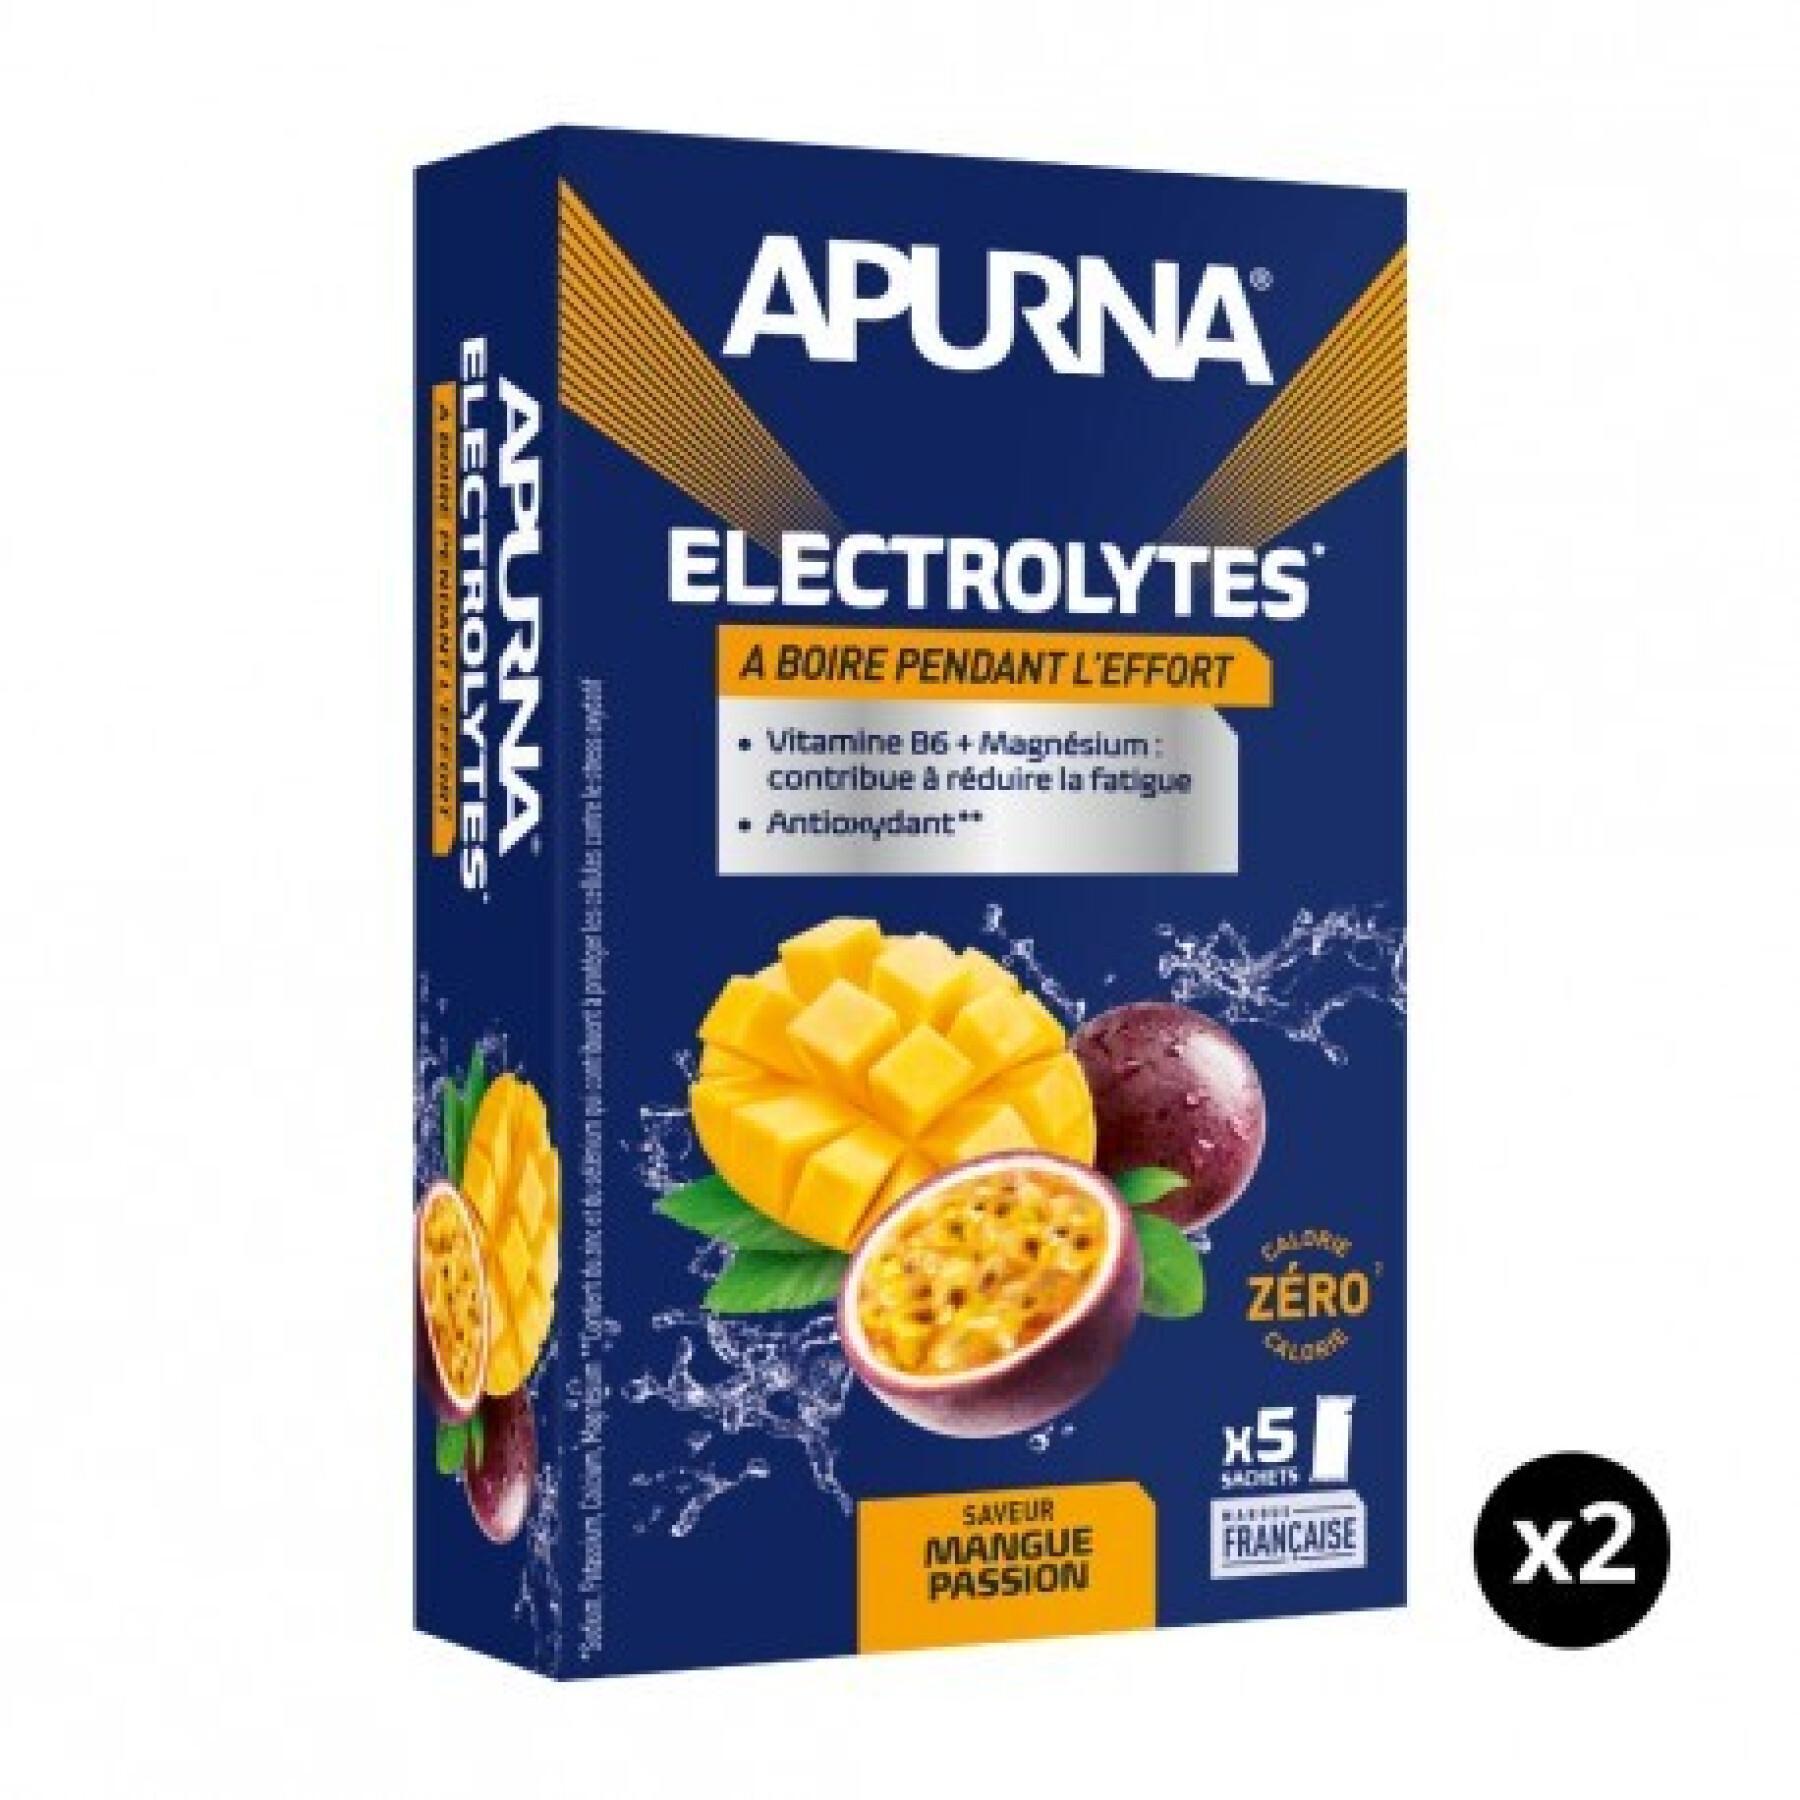 Set van 2 mango-passievrucht elektrolyten Apurna